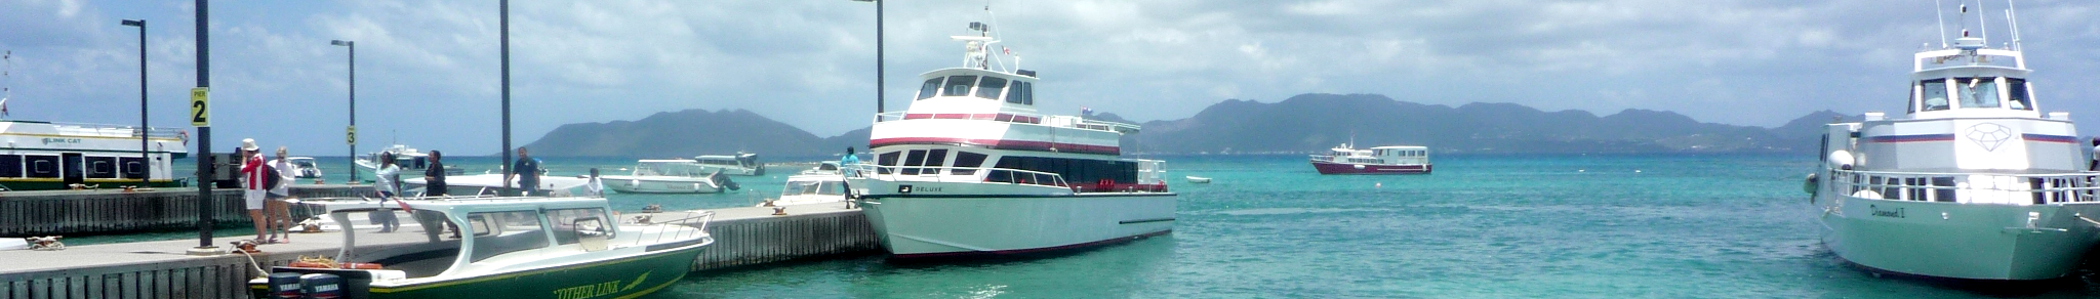 Nuovi orari dei traghetti in partenza da Anguilla e St. Martin, Caraibi